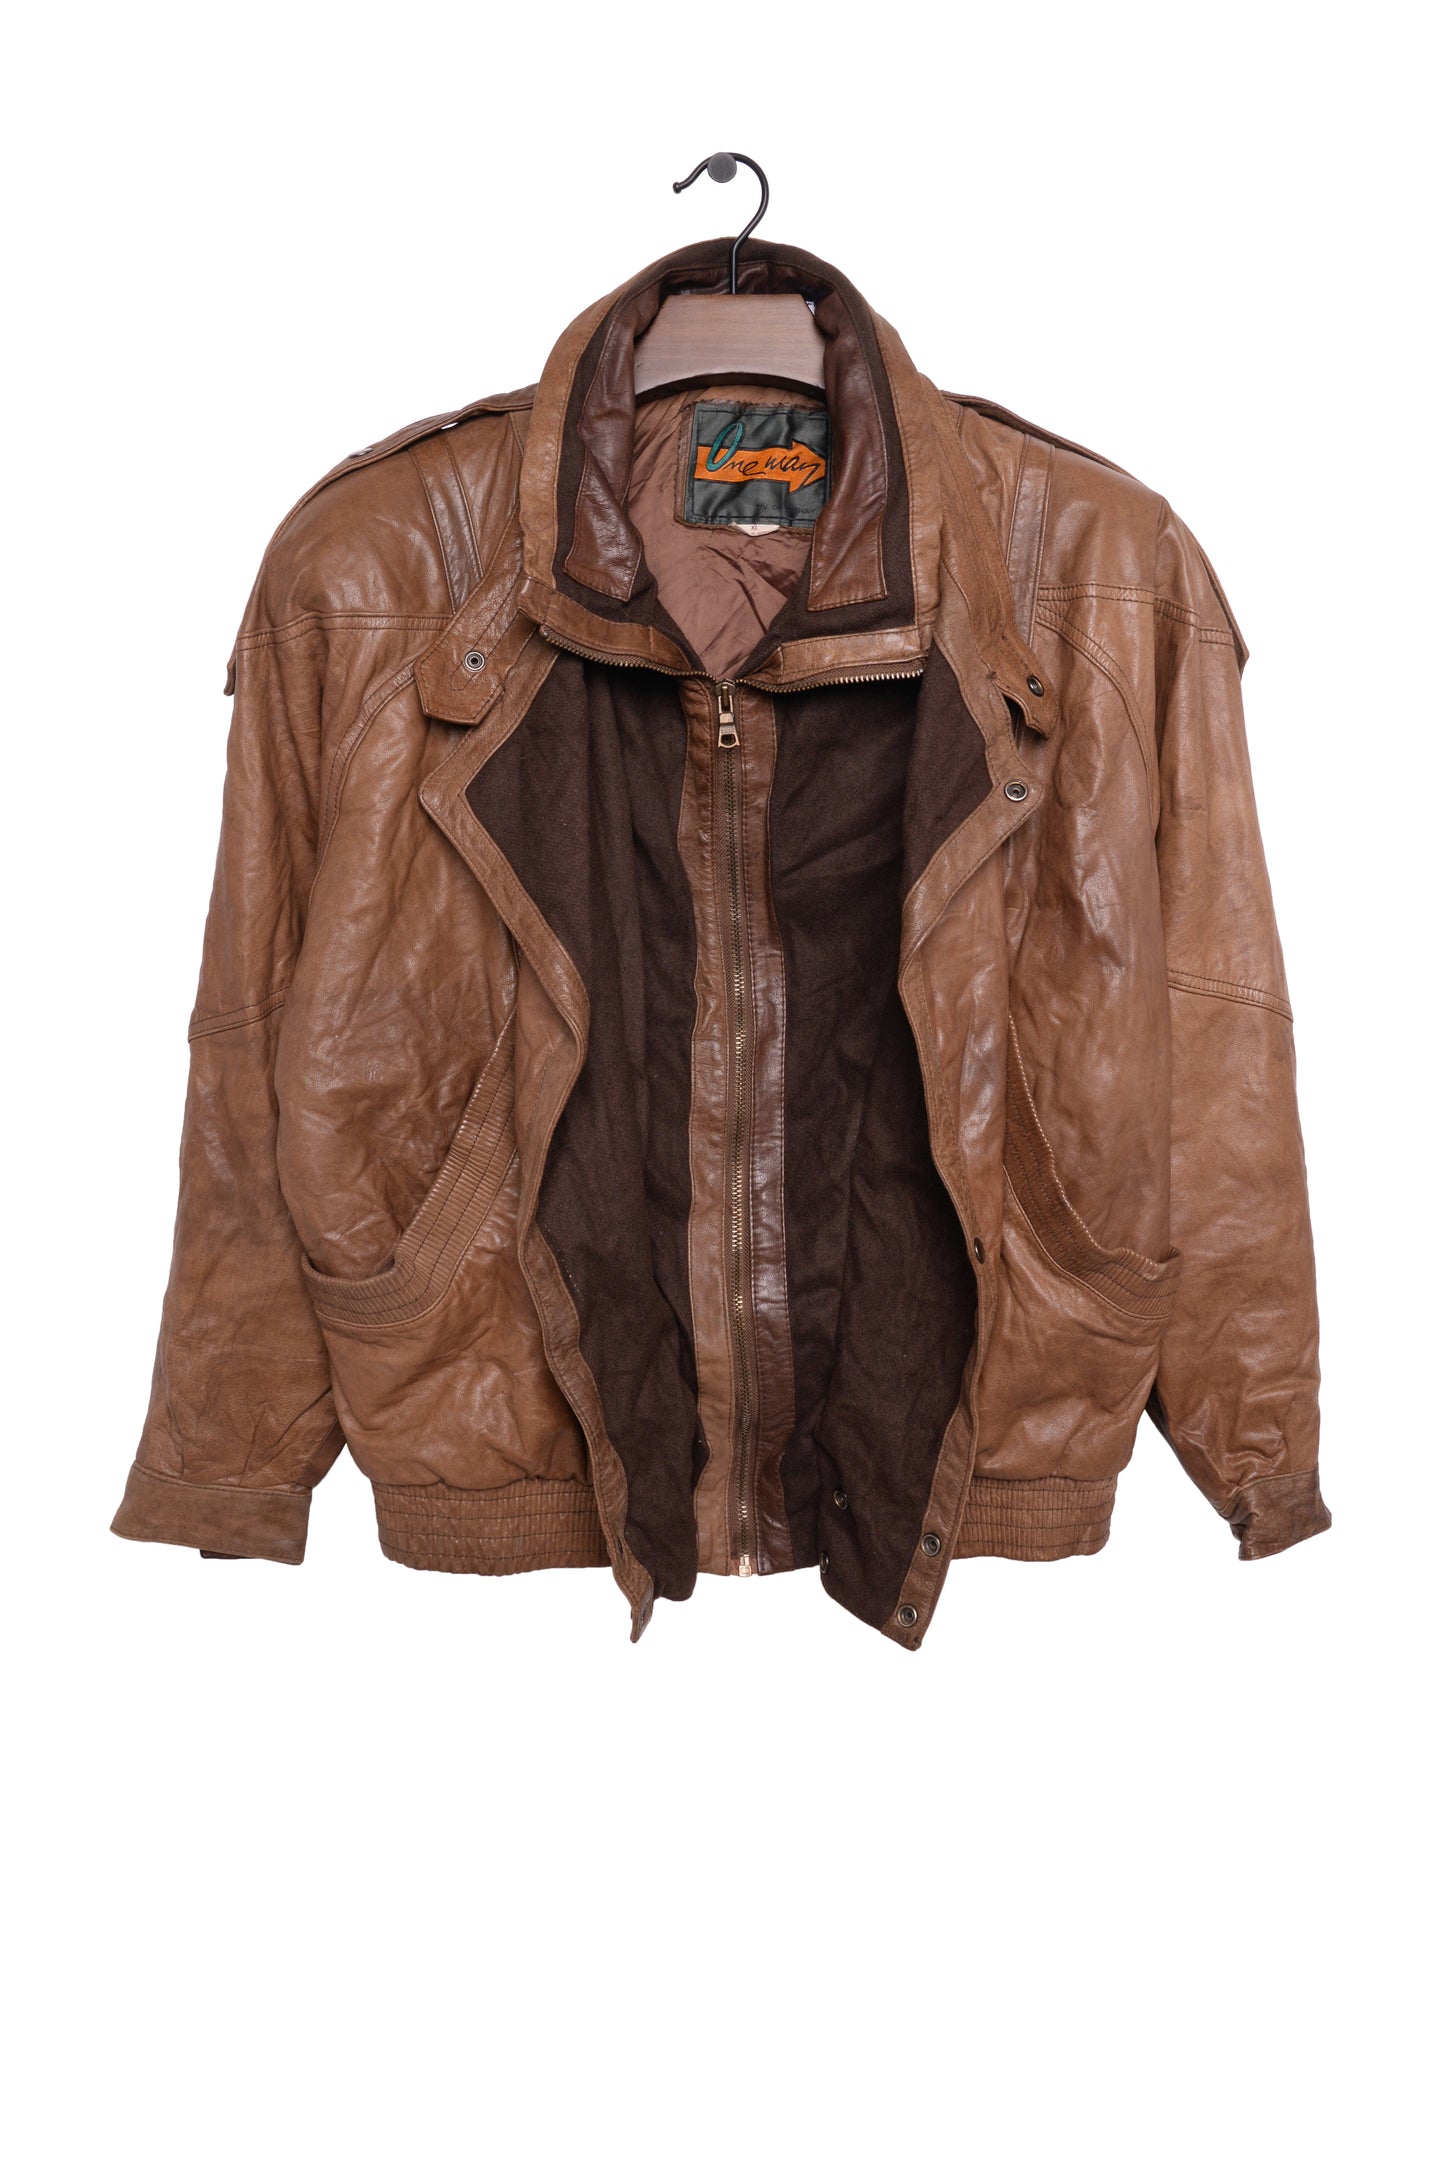 1980s Caramel Leather Bomber Jacket